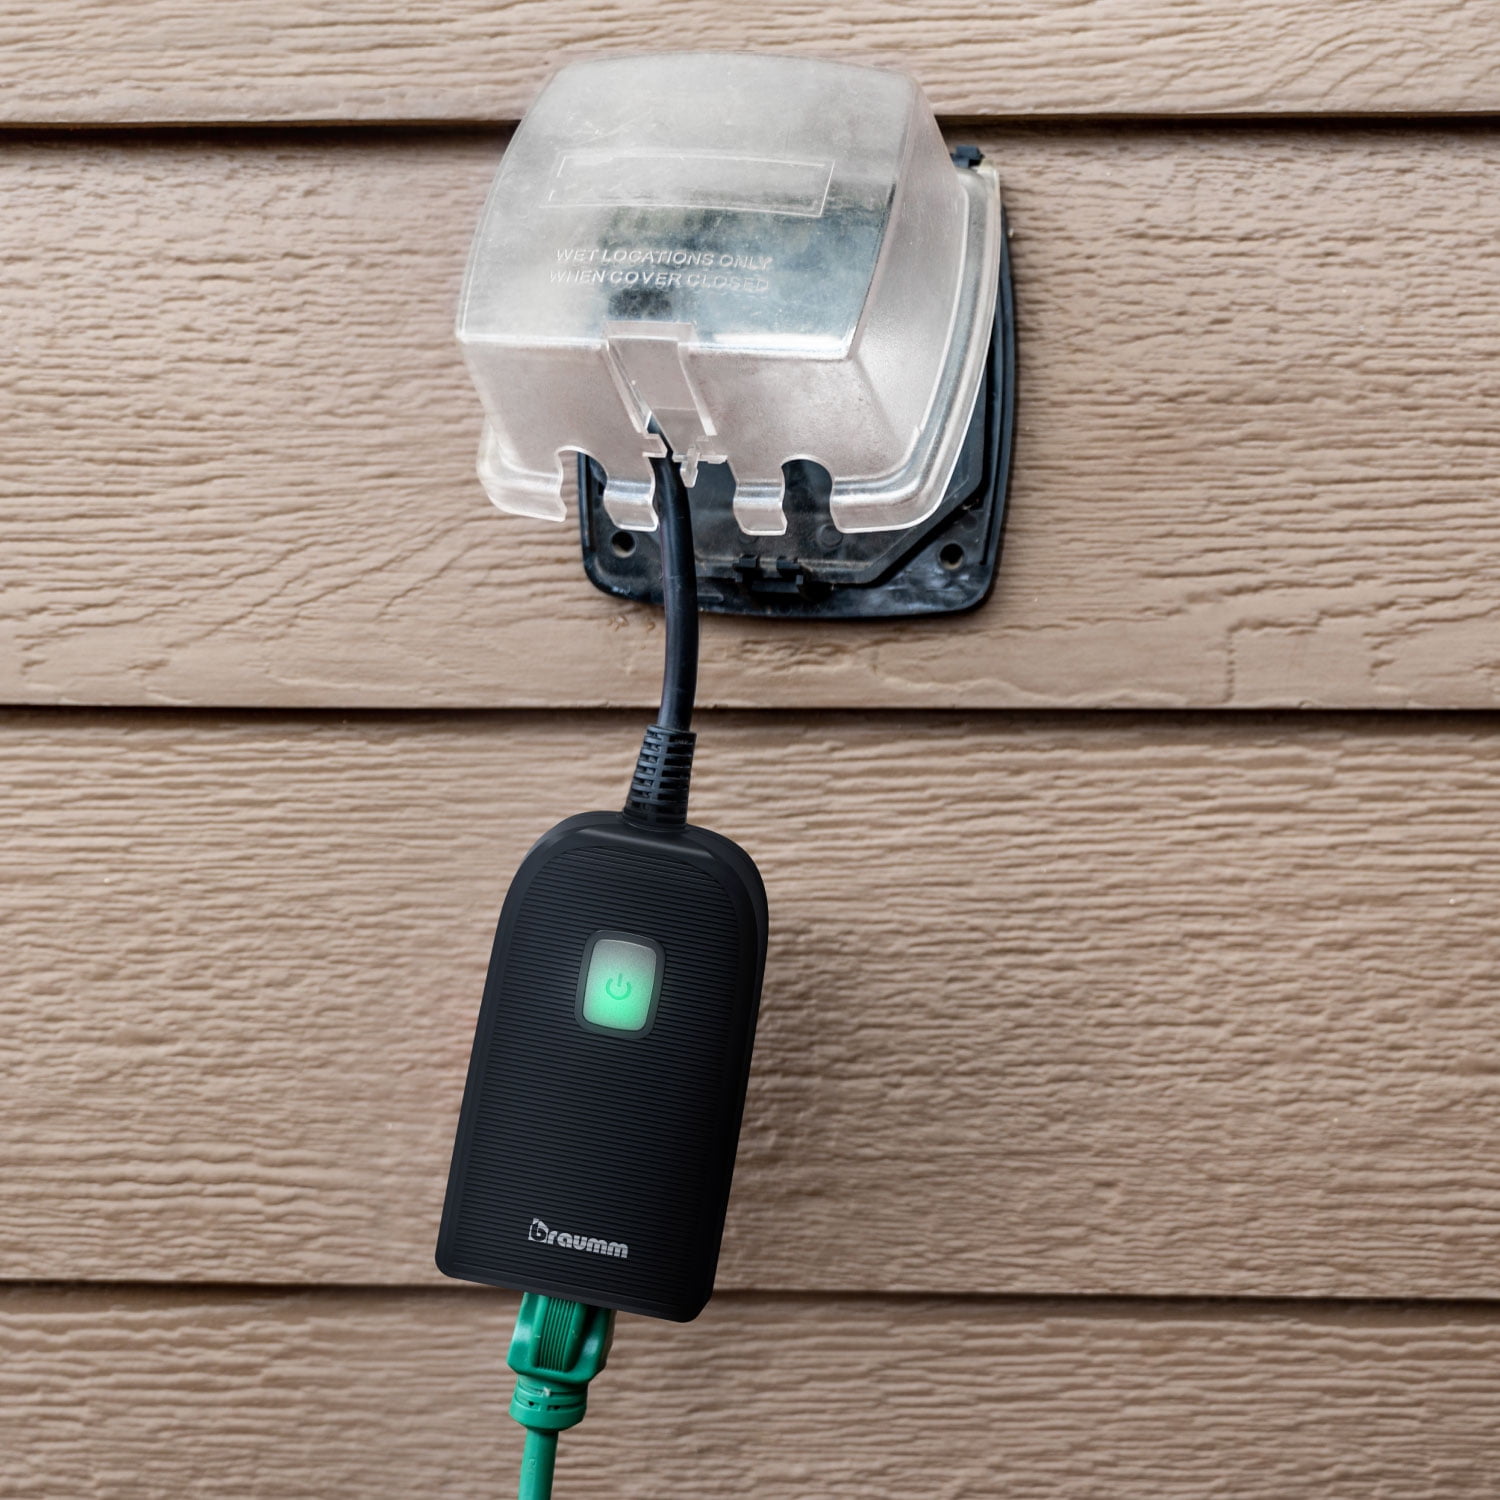 Braumm Outdoor Smart Plug